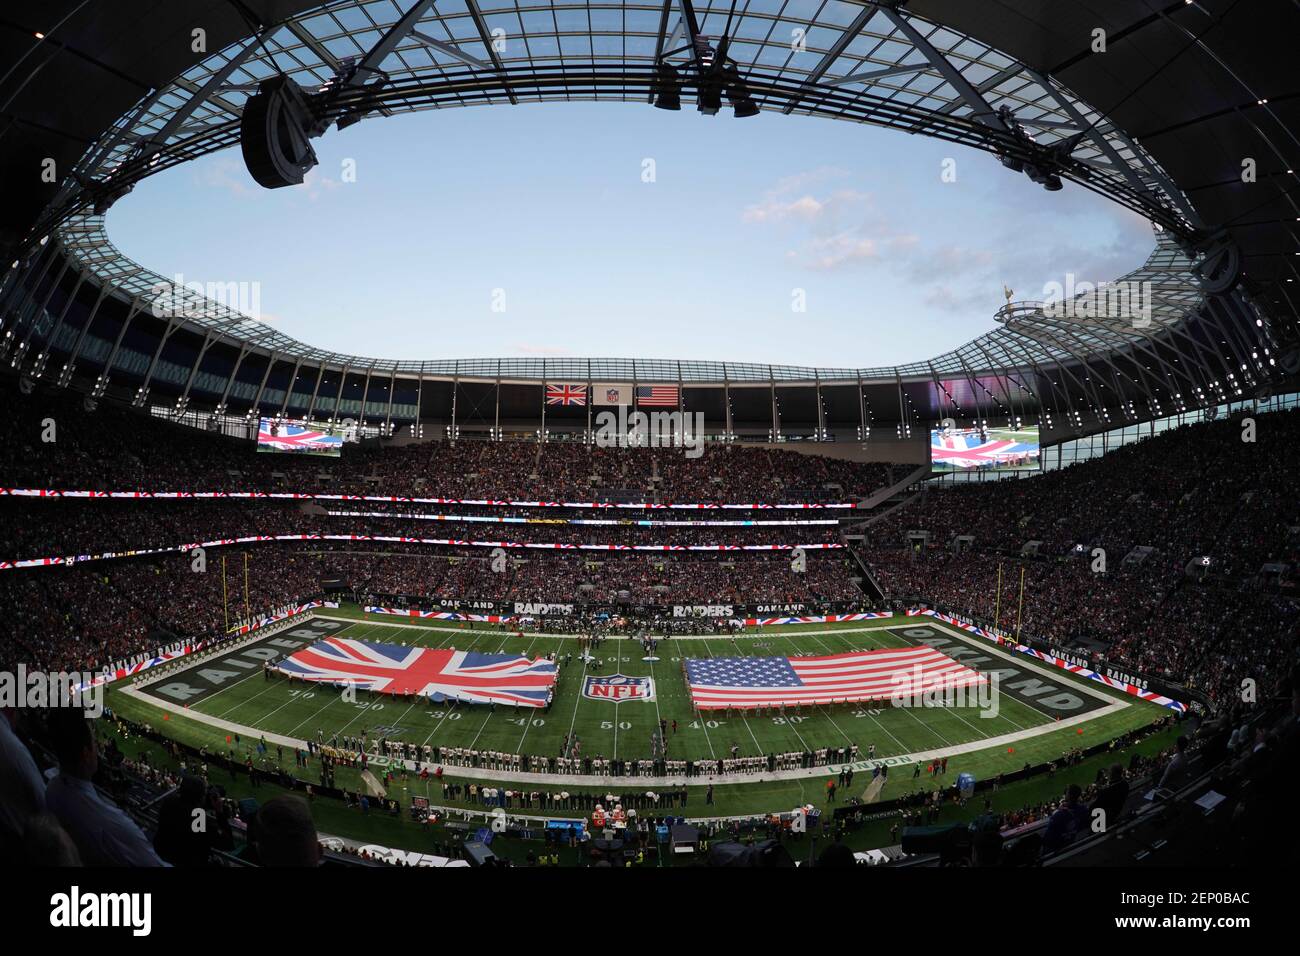 Oct 6, 2019; Londres, Reino Unido; Vista general del estadio Tottenham Hotspur con banderas estadounidenses y británicas en el campo durante la interpretación del himno nacional antes de un partido de la NFL International Series entre los Chicago Bears y los Oakland Raiders. Crédito obligatorio: Kirby Lee-USA HOY Deportes/Sipa USA Foto de stock